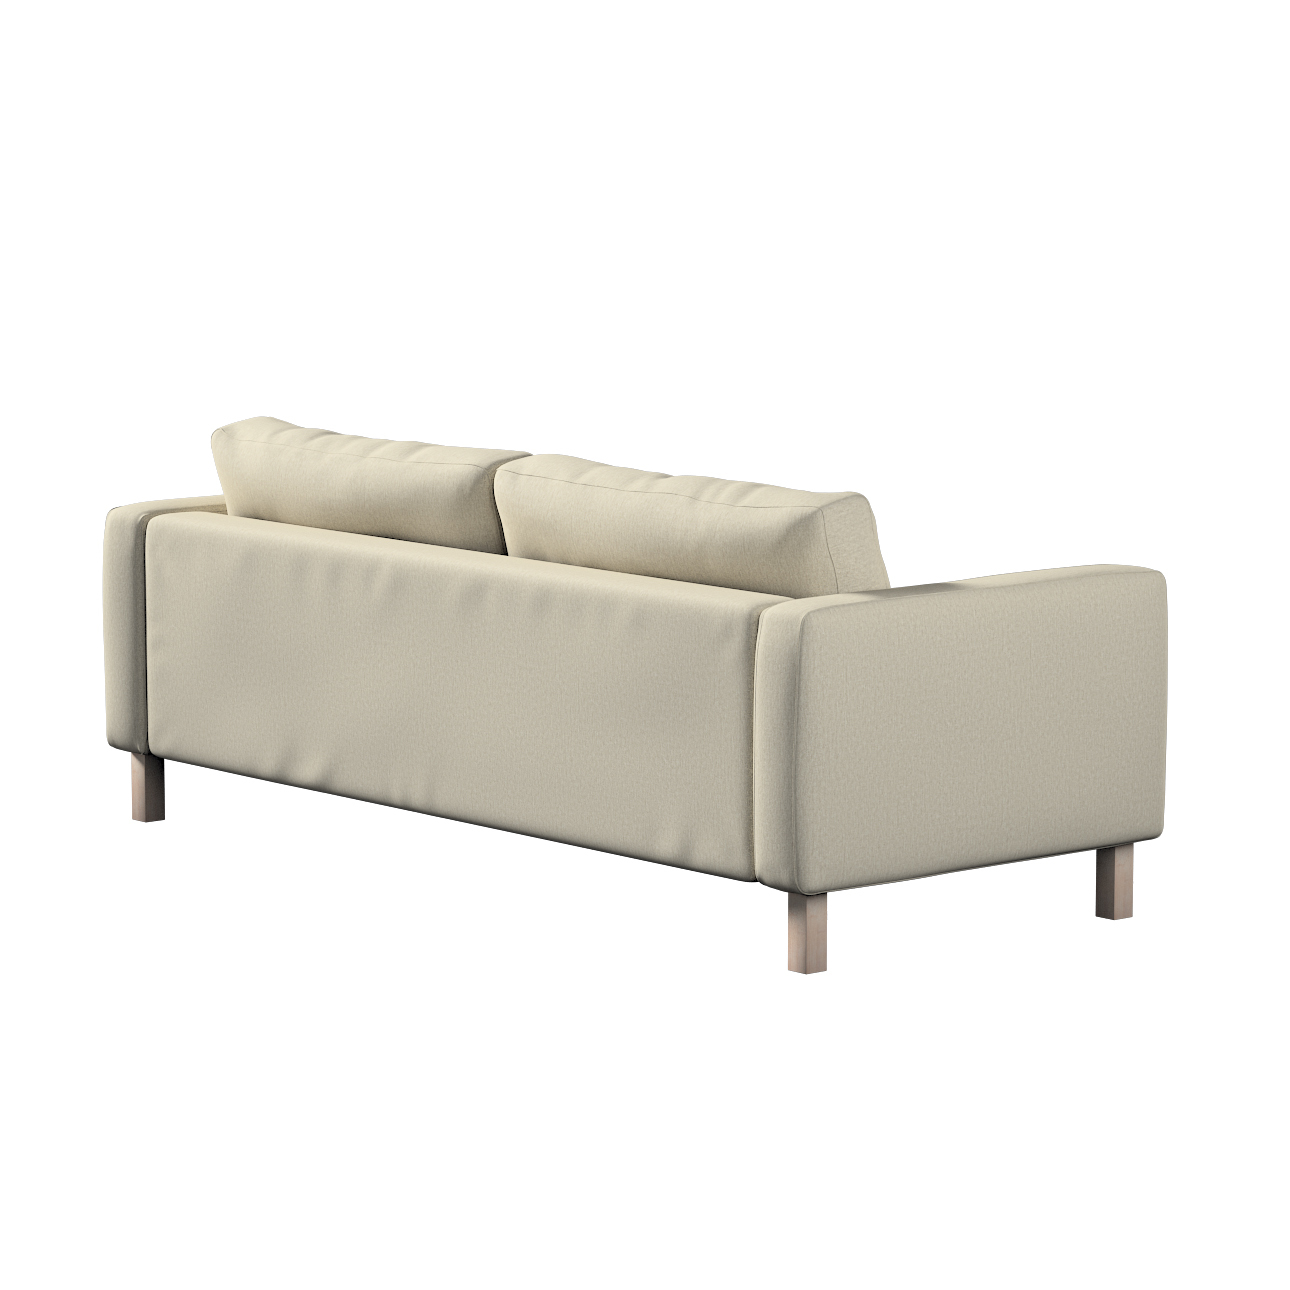 Bezug für Karlstad 3-Sitzer Sofa nicht ausklappbar, kurz, beige-grau, Bezug günstig online kaufen